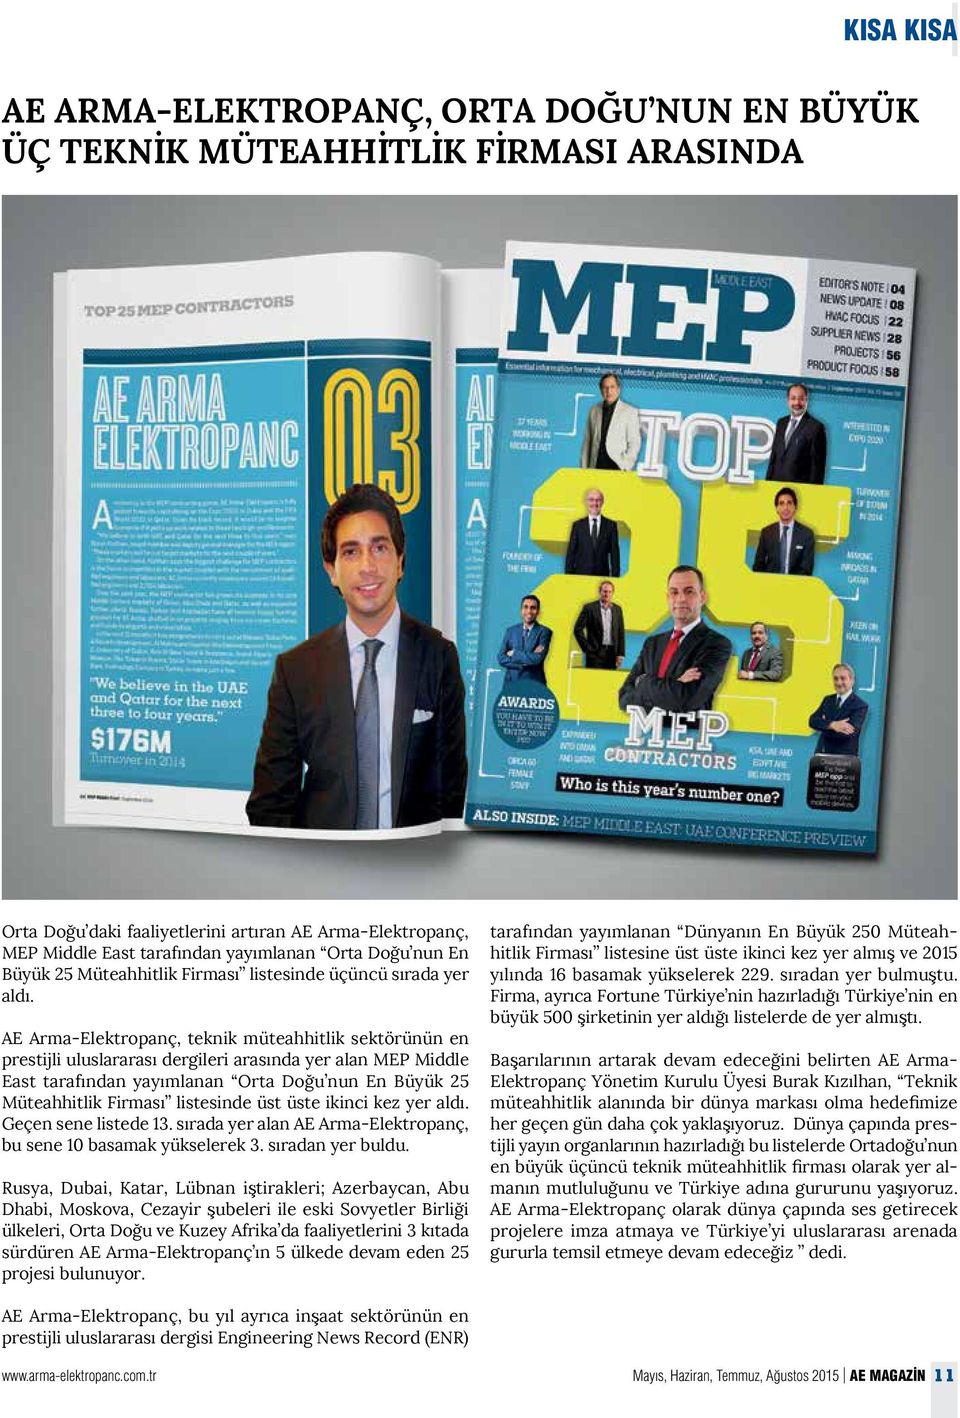 AE Arma-Elektropanç, teknik müteahhitlik sektörünün en prestijli uluslararası dergileri arasında yer alan MEP Middle East tarafından yayımlanan Orta Doğu nun En Büyük 25 Müteahhitlik Firması